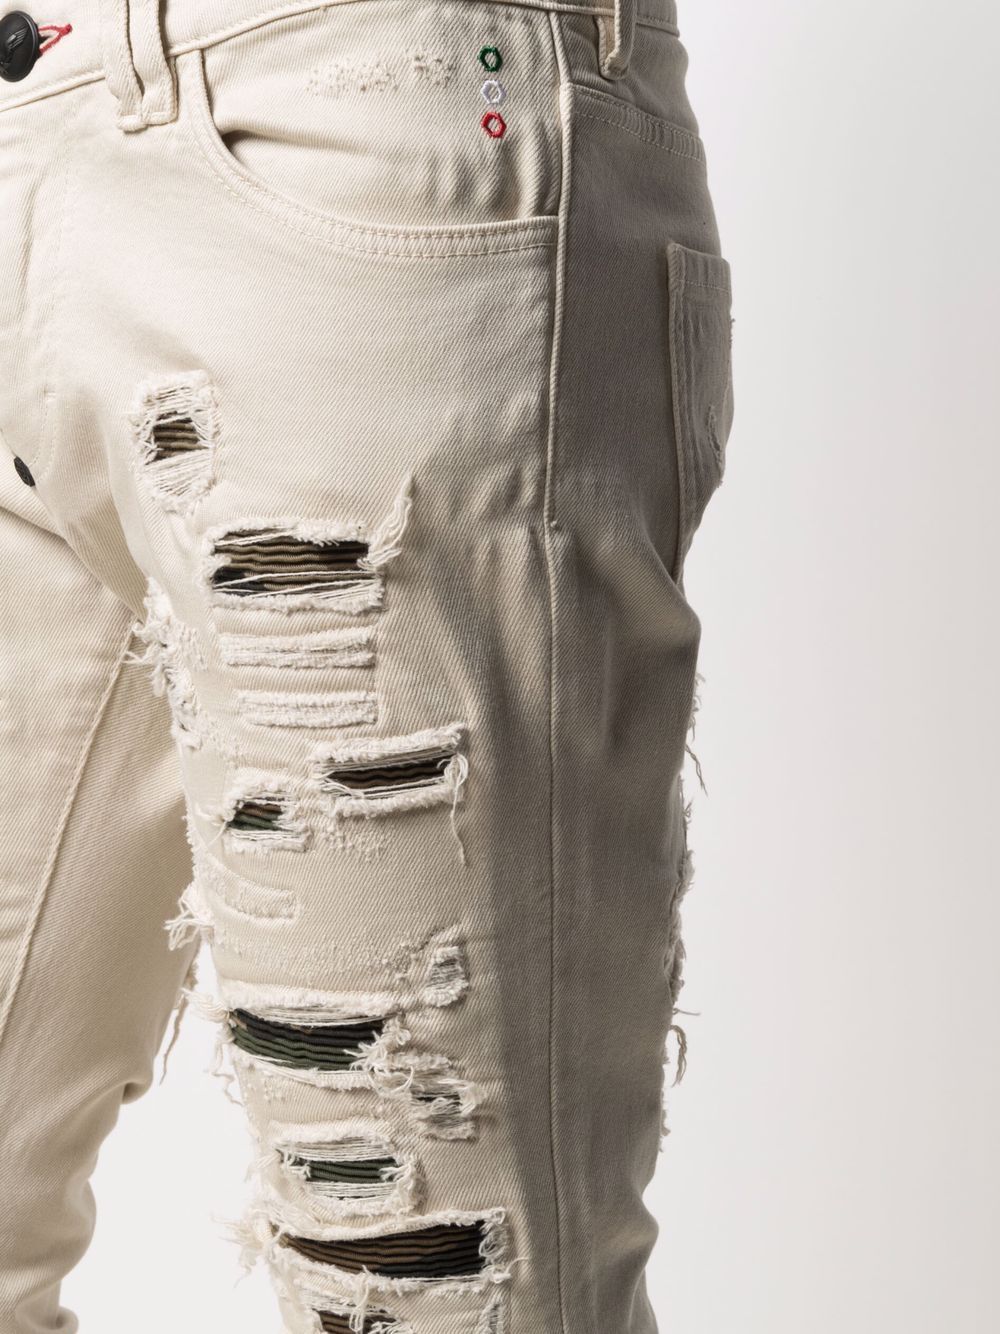 фото Philipp plein джинсы кроя слим с камуфляжным принтом